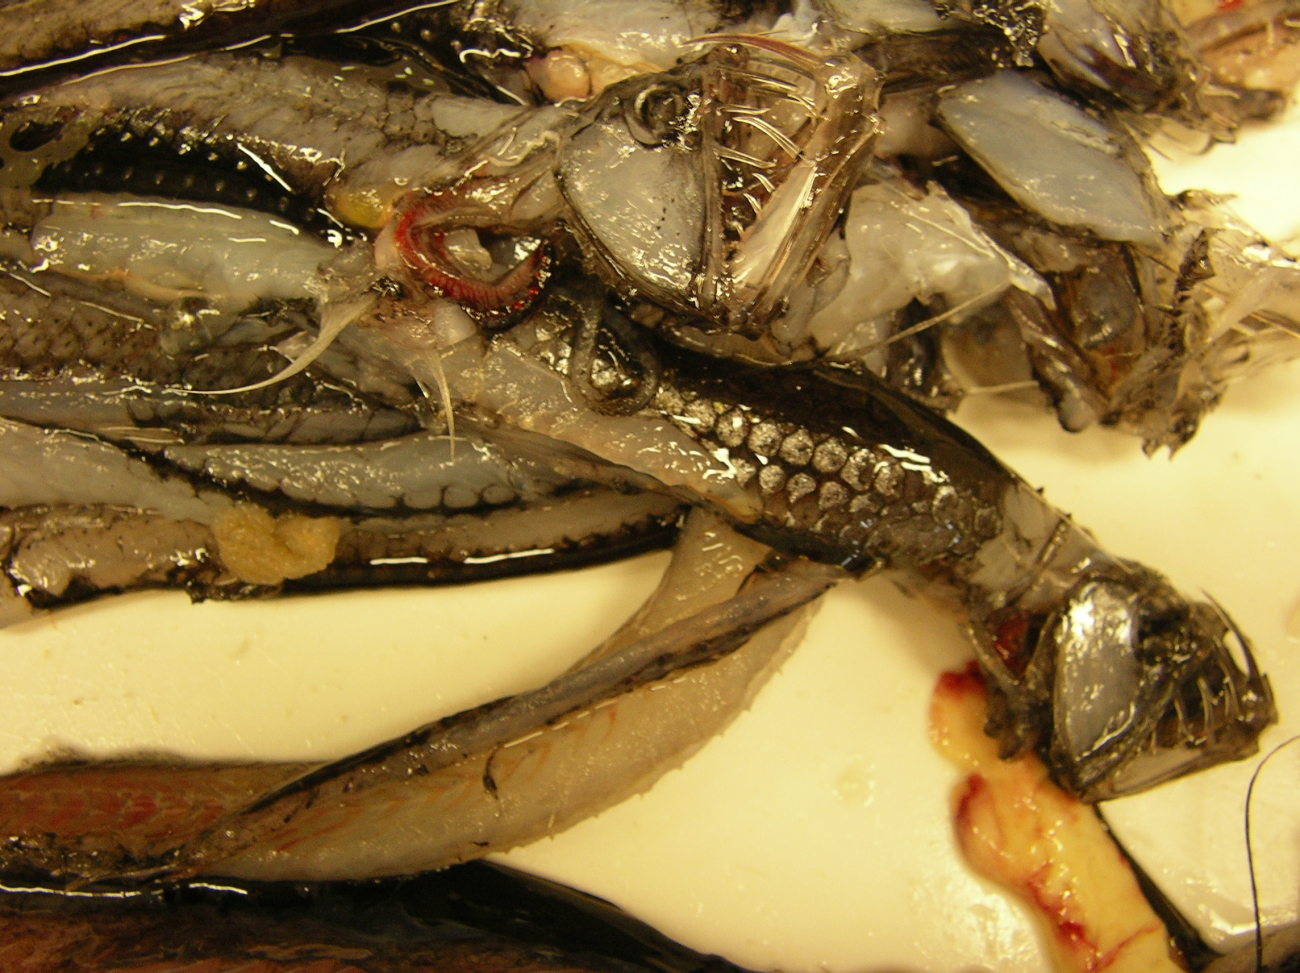 Viperfish (Chauliodus shoani)